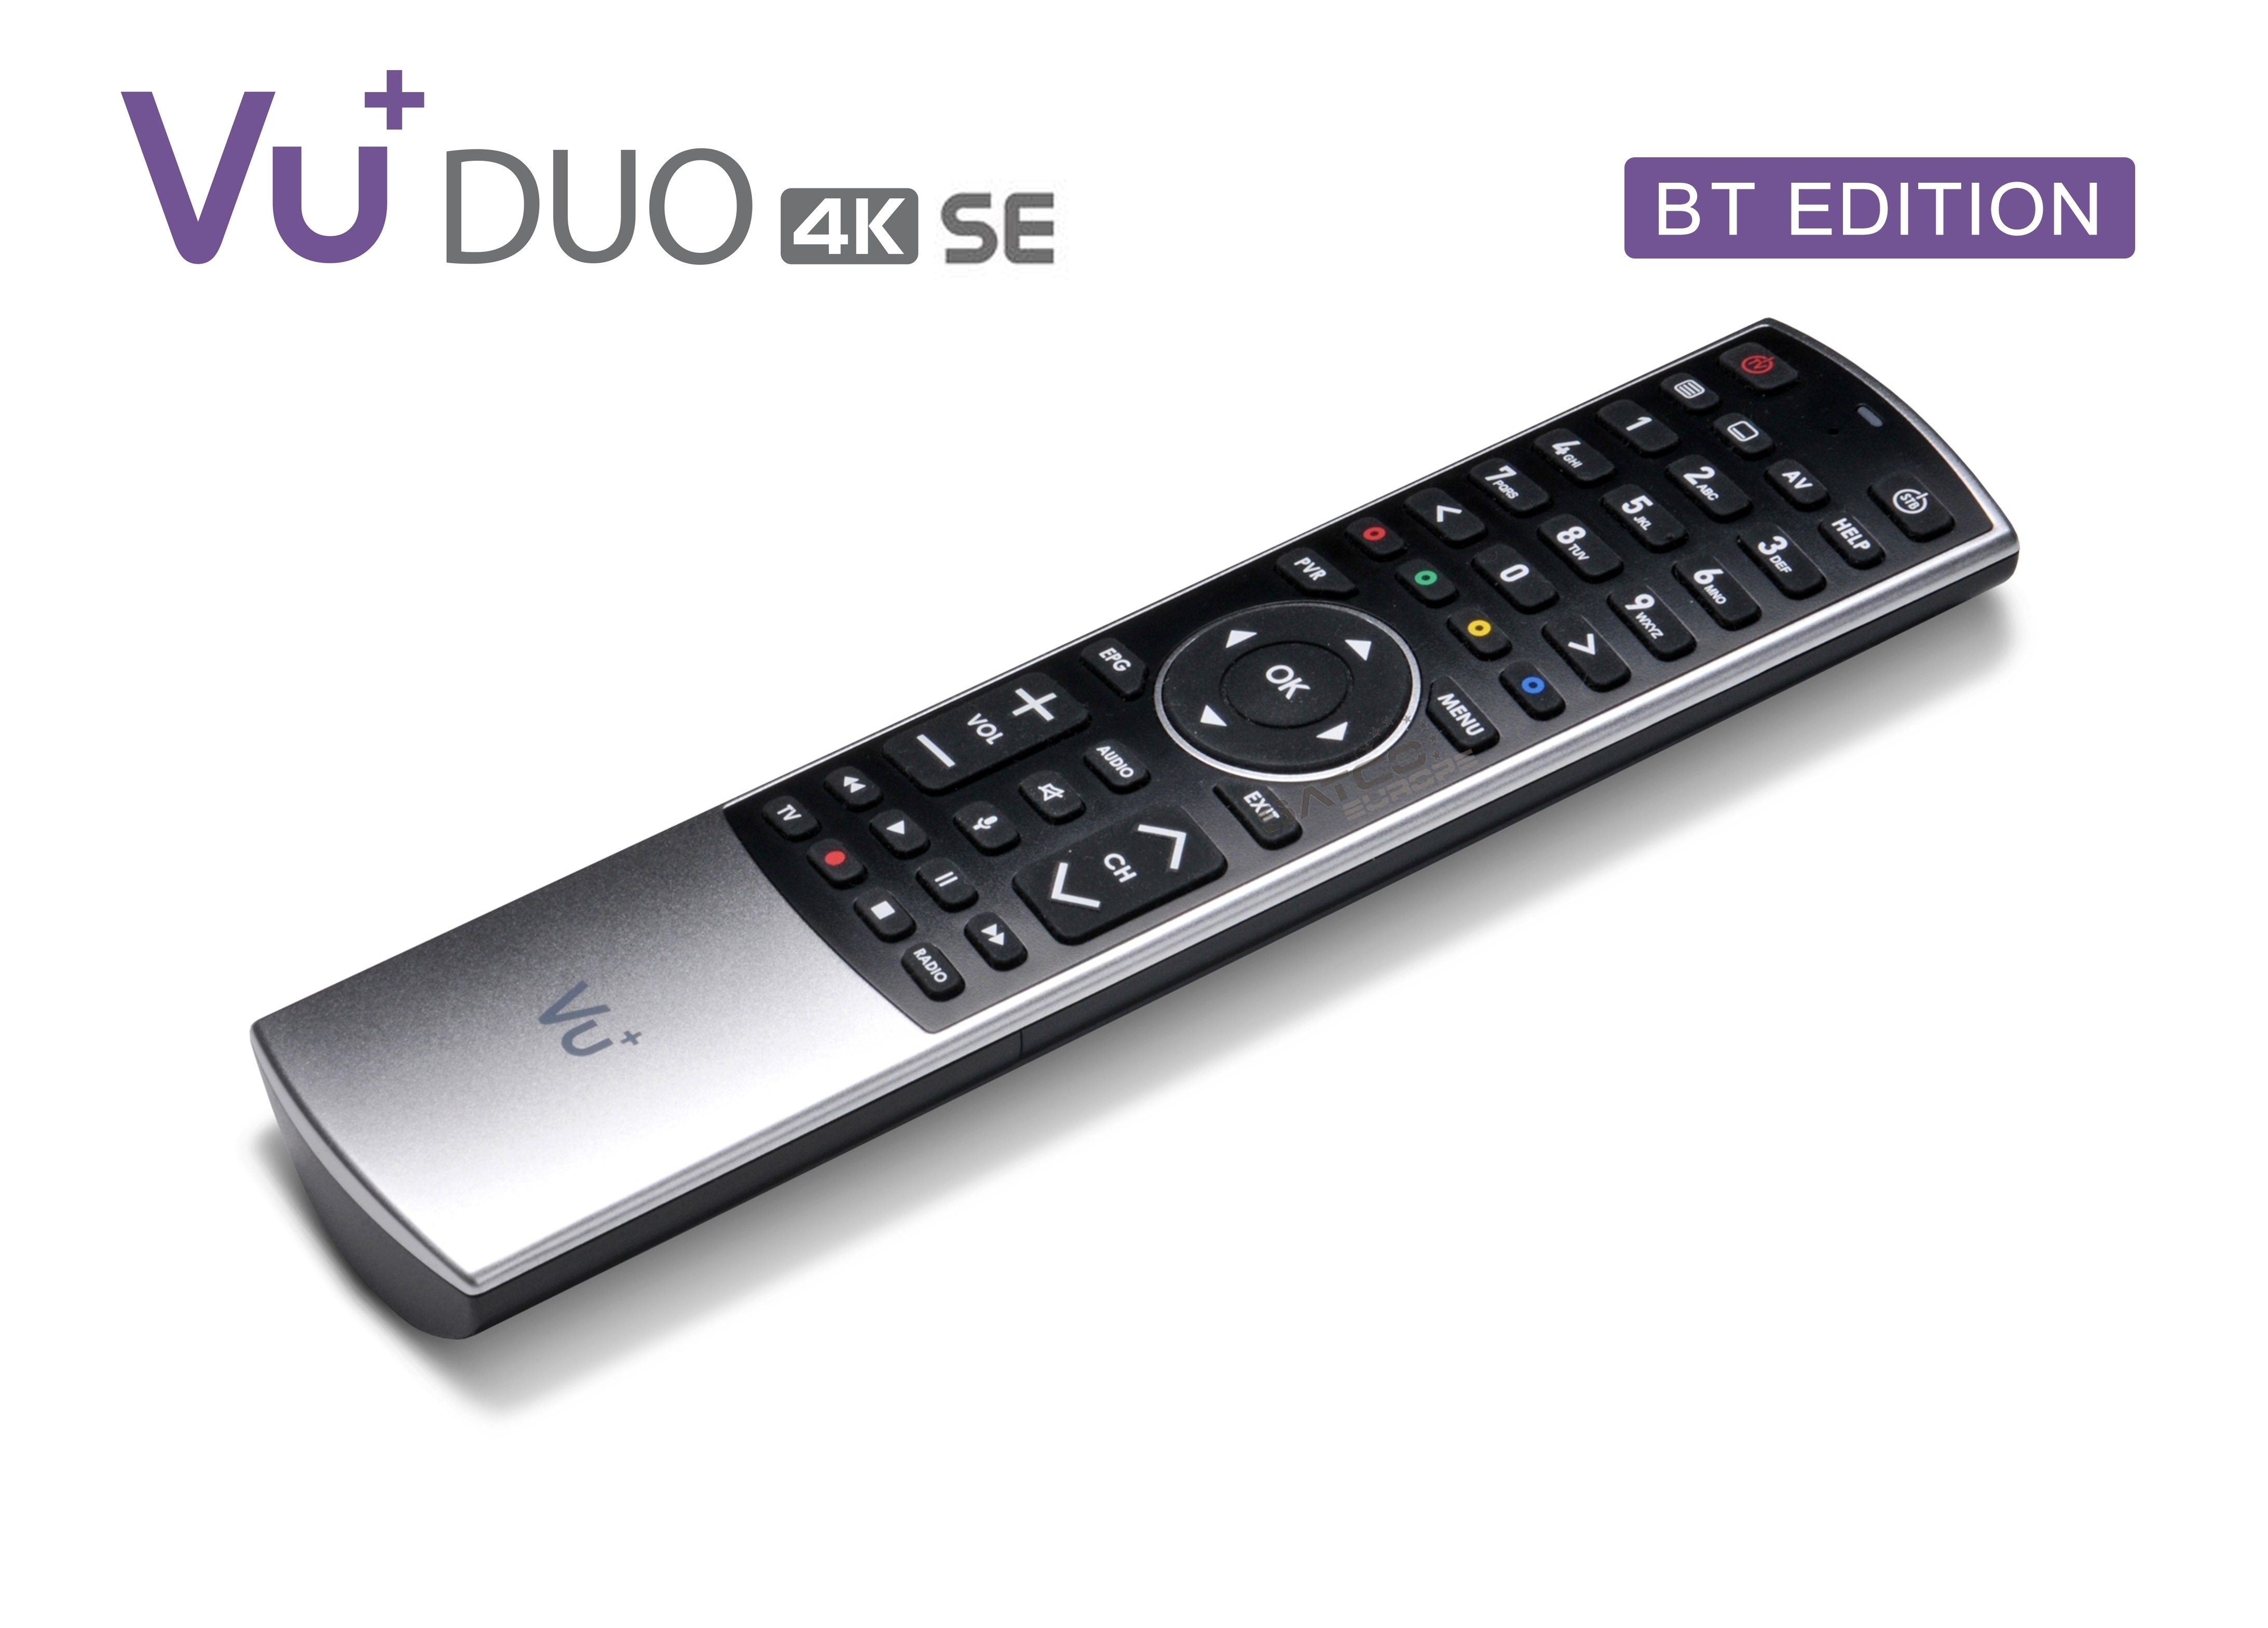 VU+ Duo 4K SE BT 1x DVB-S2X FBC Twin Tuner 2 TB HDD Linux Receiver UHD 2160p